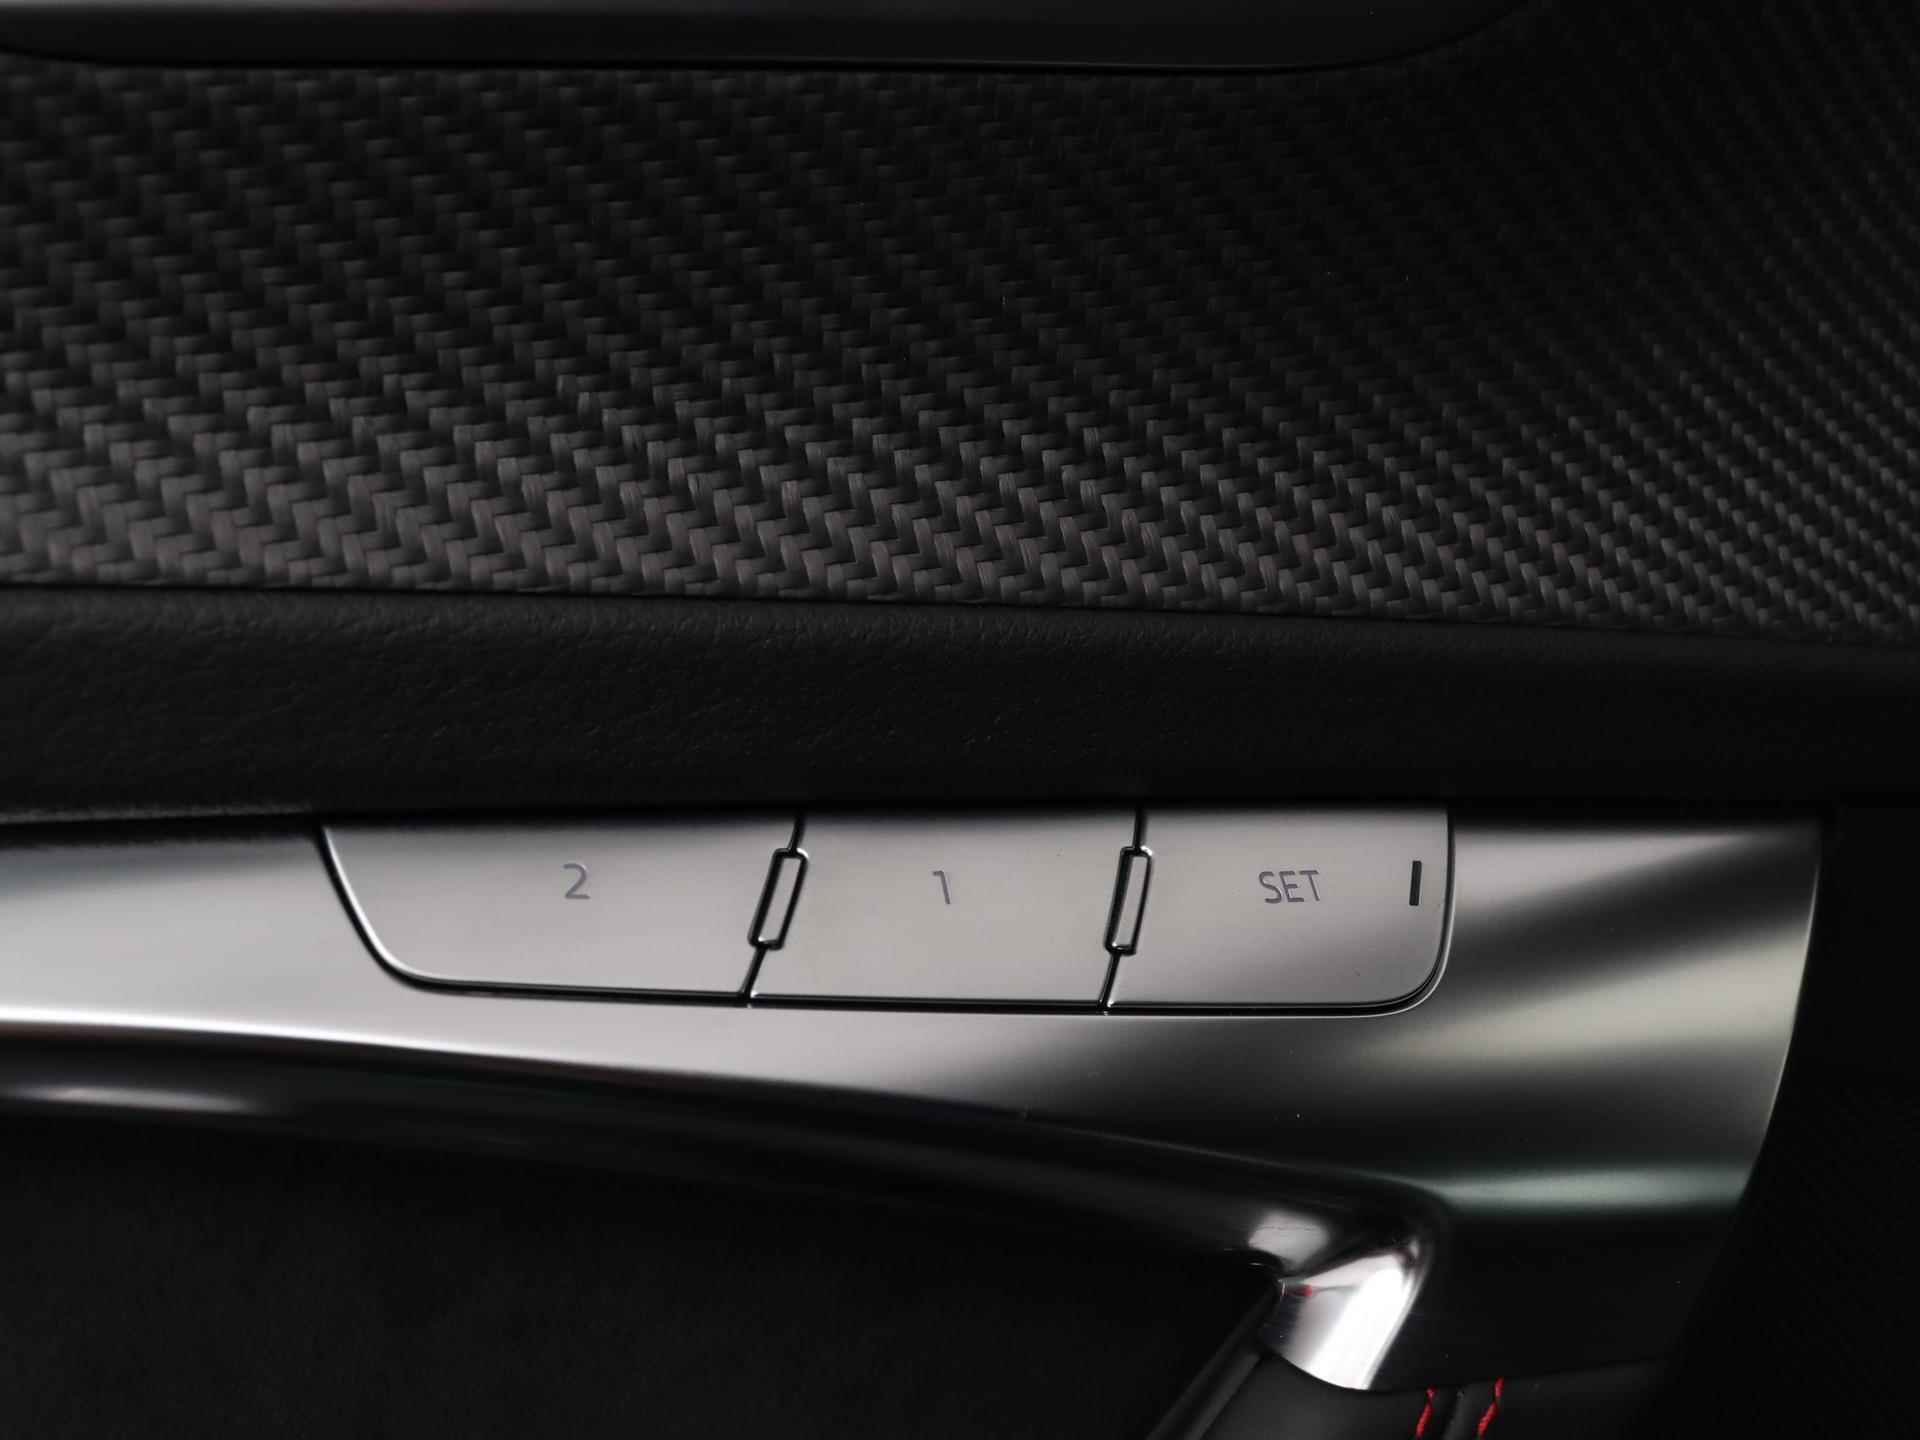 Audi RS 6 Avant TFSI quattro 600 PK | Head-up display | Bang & Olufsen Soundsystem | 22 inch lm velgen | RS Dynamic Pakket Plus | RS Design pakket Rood |Optiekpakket Zwart Plus | Panorama dak | RS Sportuitlaat | Keramische remschijven Rood | RS Sportonderstel Plus | Servosluiting deuren | Nu € 36.129,- ACTIEKORTING! | DIRECT LEVERBAAR! | - 25/35